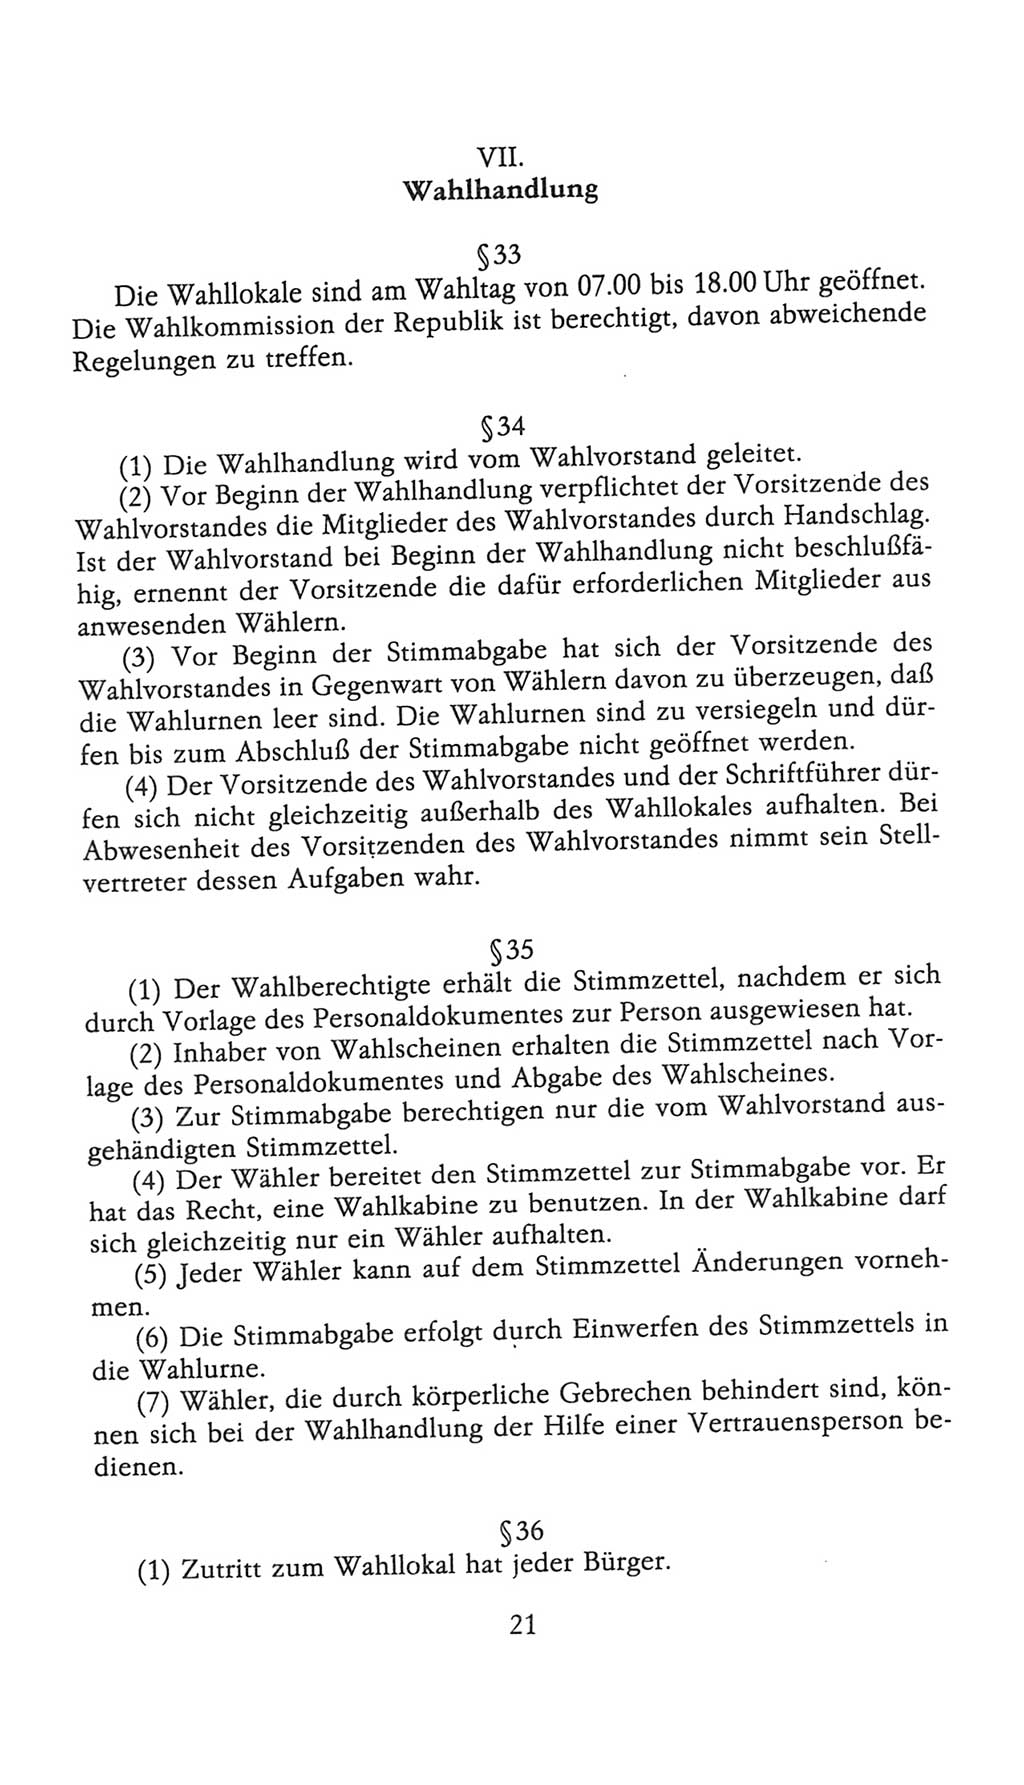 Volkskammer (VK) der Deutschen Demokratischen Republik (DDR), 9. Wahlperiode 1986-1990, Seite 21 (VK. DDR 9. WP. 1986-1990, S. 21)